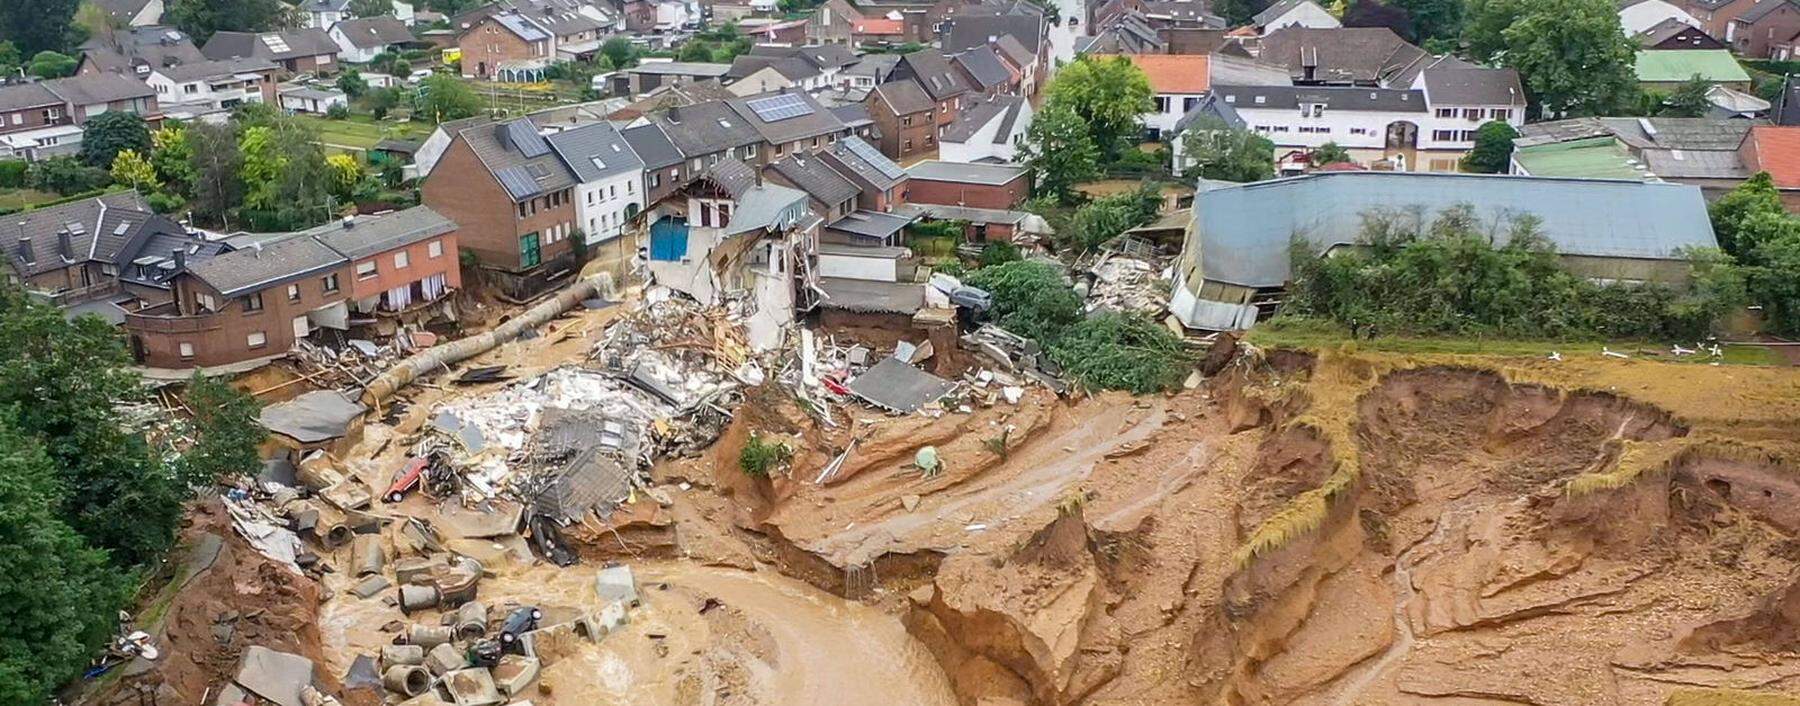 Das Gebiet um Erftstadt-Blessem wurde von der Flut schwer getroffen